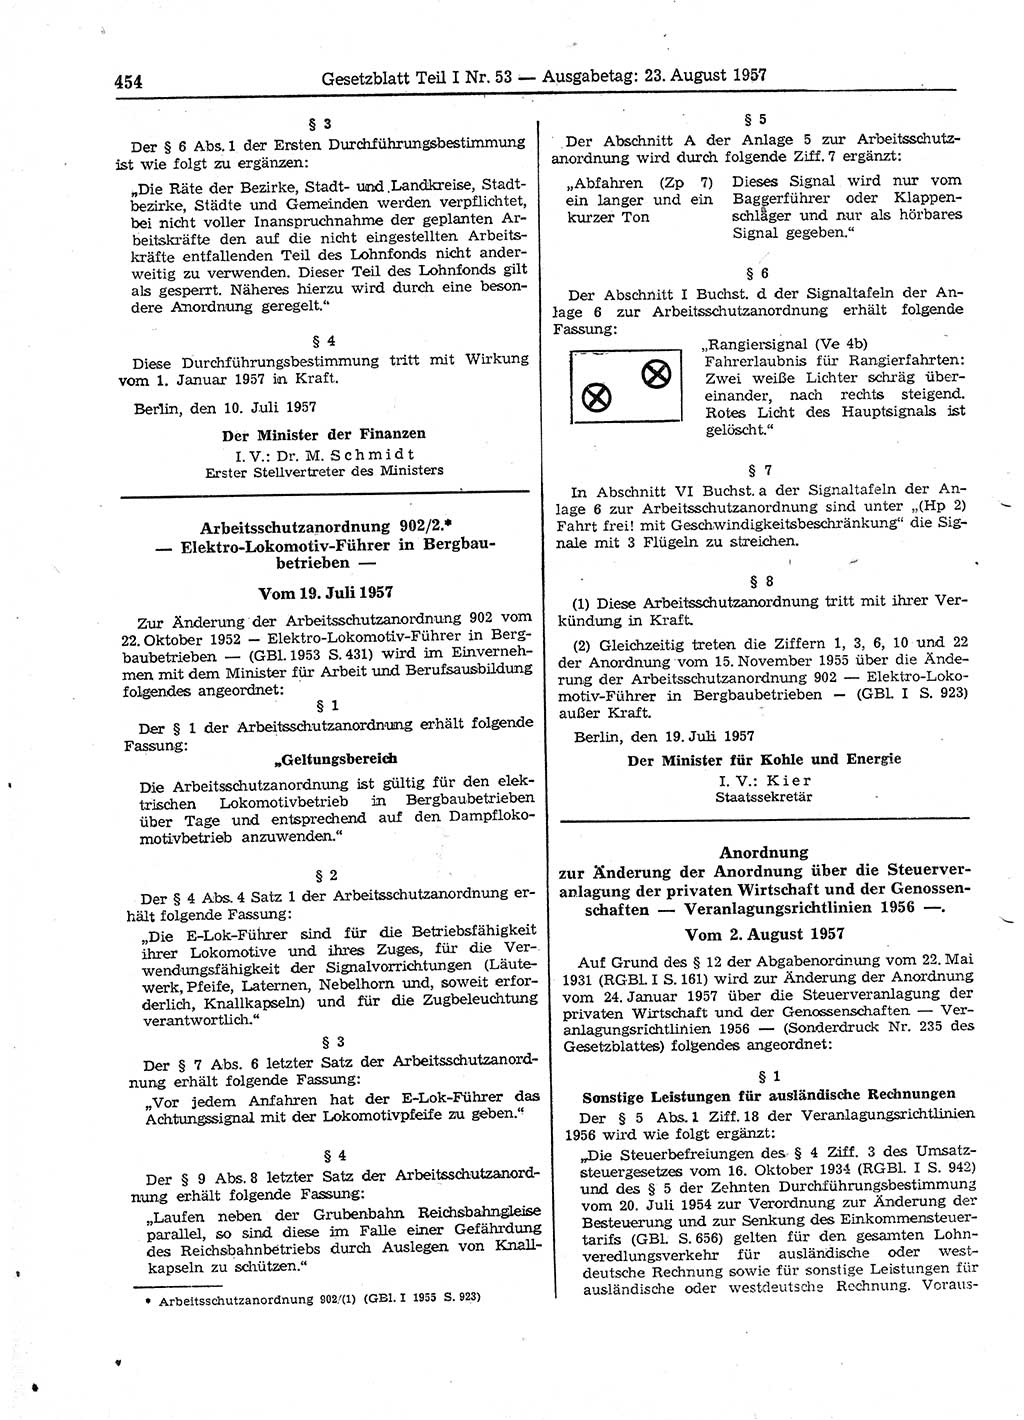 Gesetzblatt (GBl.) der Deutschen Demokratischen Republik (DDR) Teil Ⅰ 1957, Seite 454 (GBl. DDR Ⅰ 1957, S. 454)